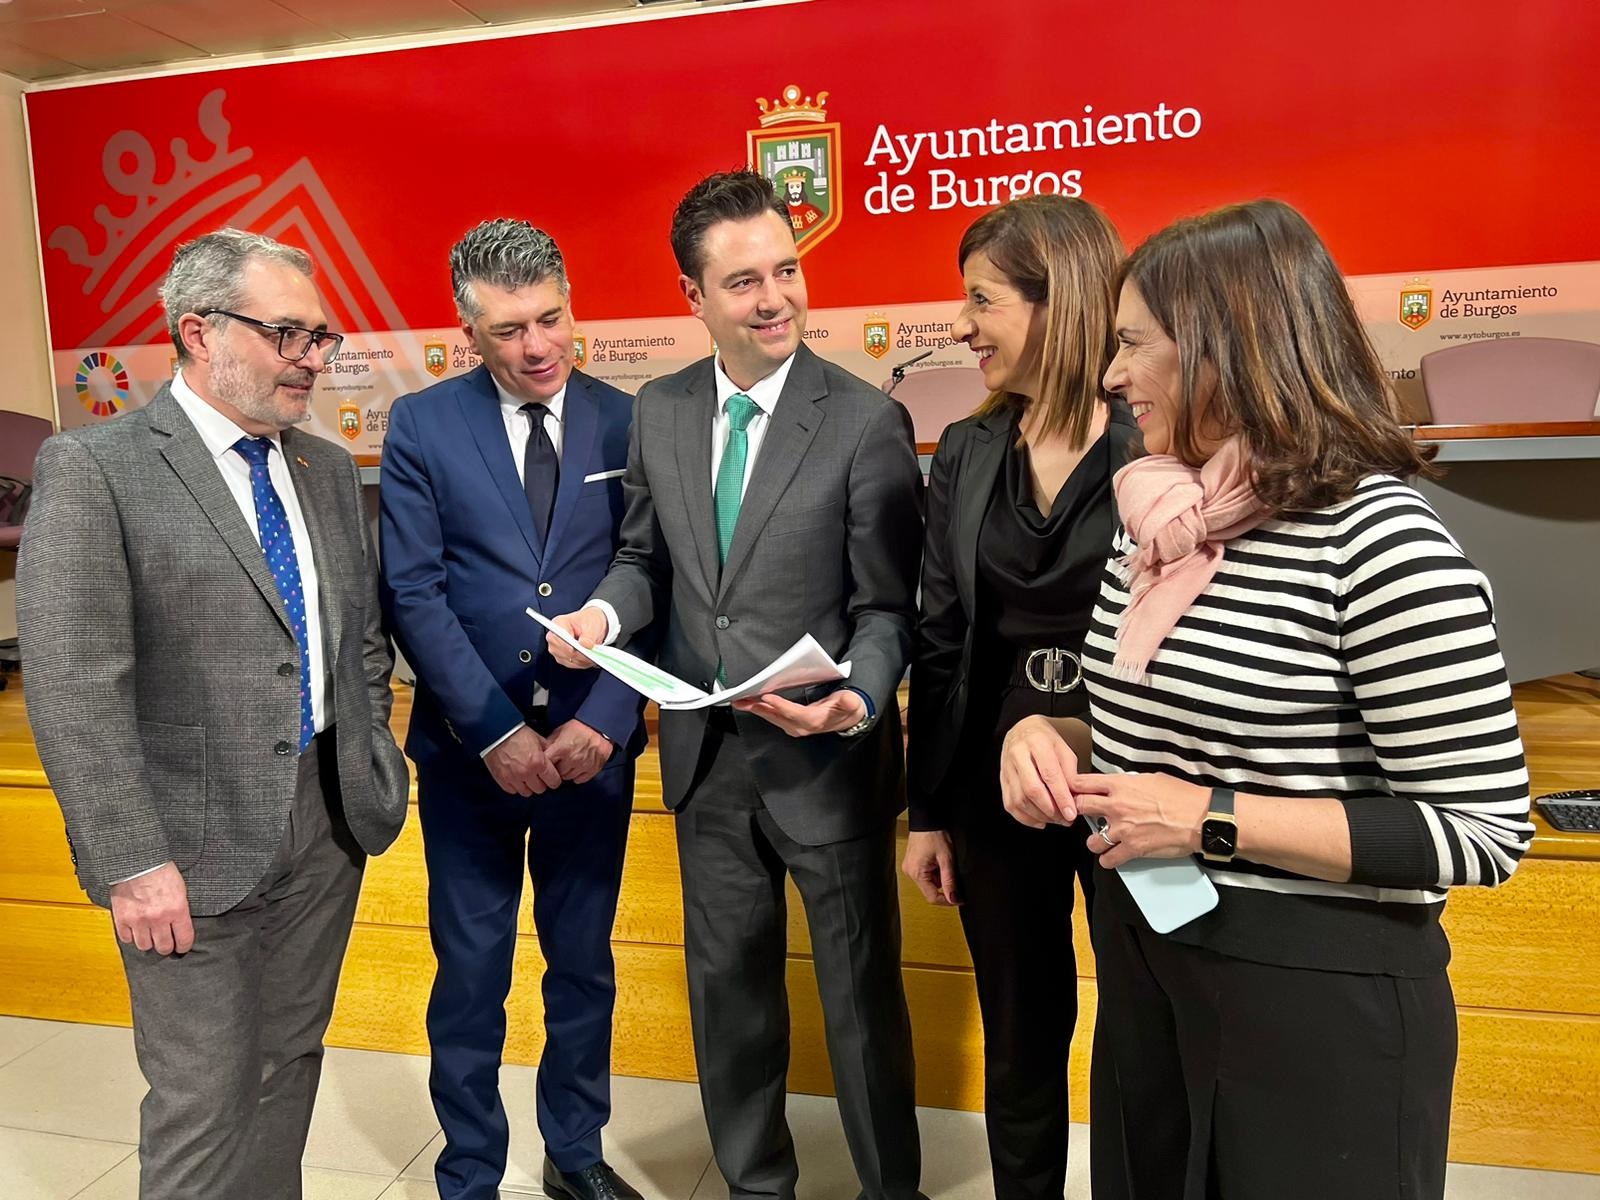 El alcalde es contundente: el nodo logístico de Burgos debe adelantar las inversiones para ganar competitividad 